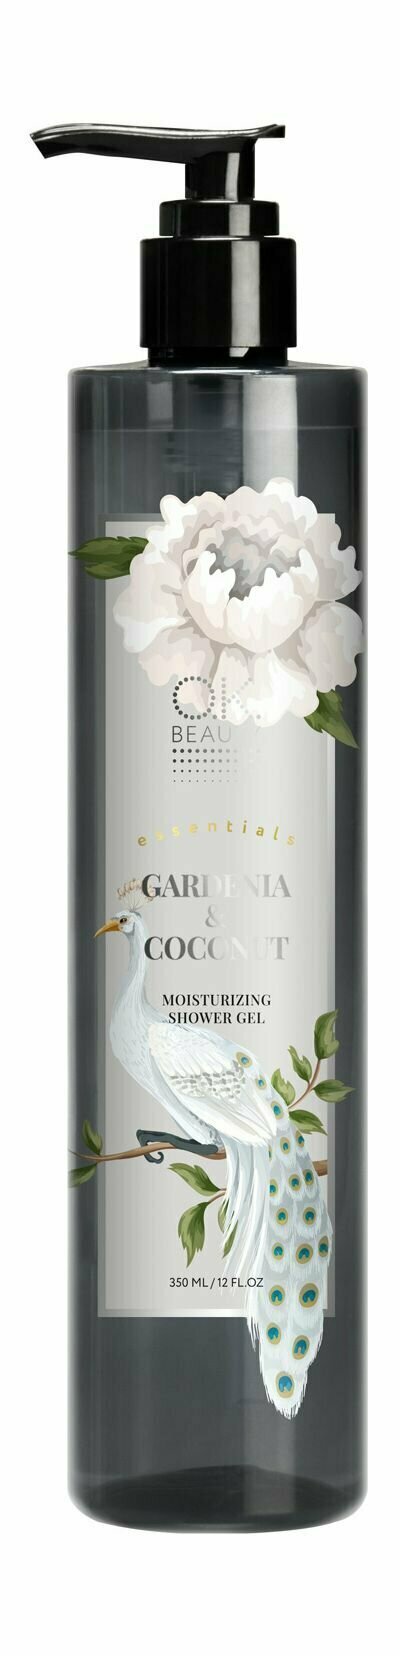 Увлажняющий гель для душа с ароматом гардении и кокоса / O.K.Beauty Essentials Gardenia&Coconut Moisturizing Shower Gel